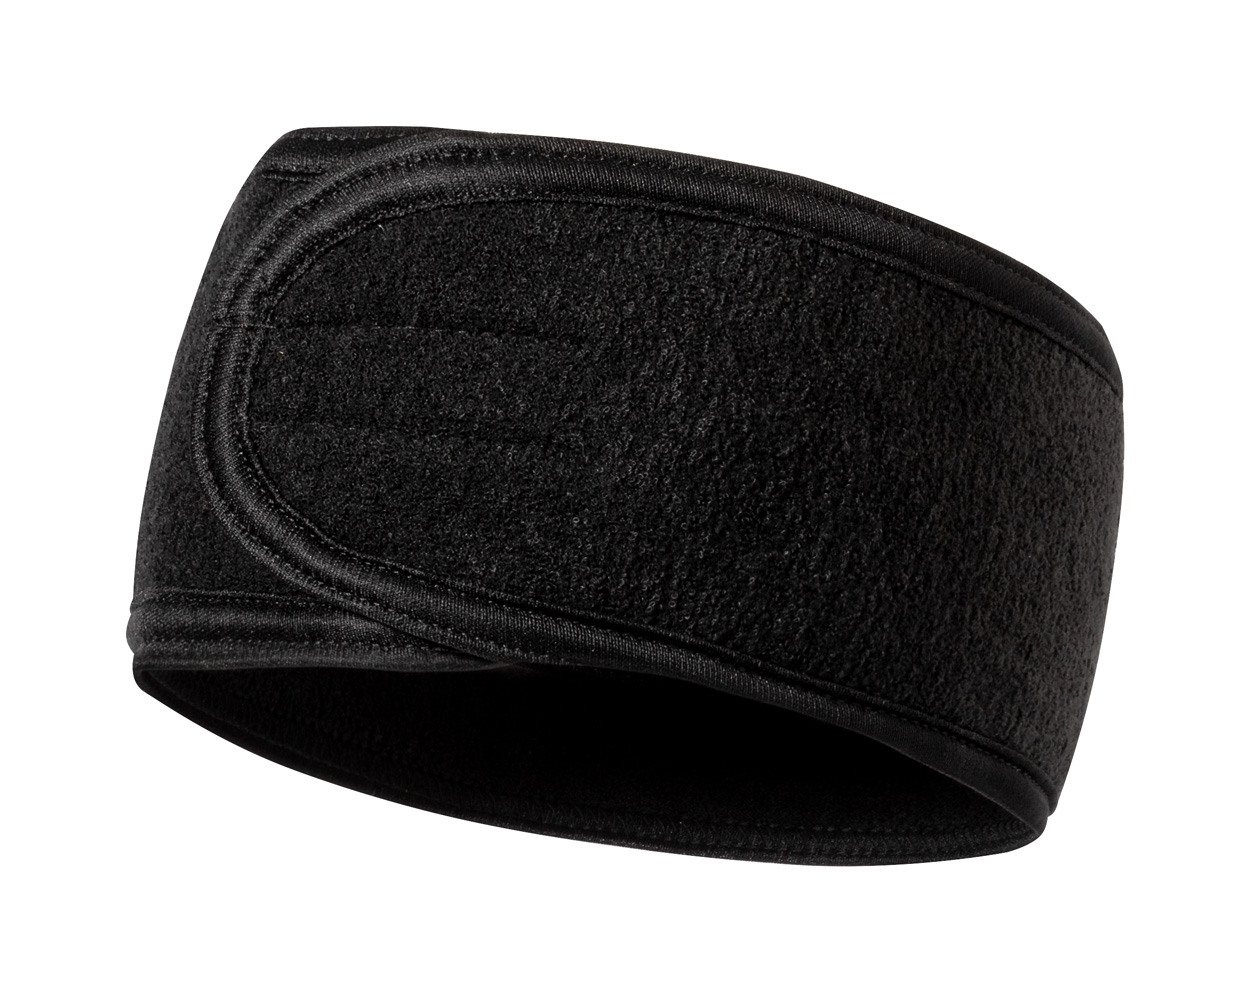 Madax headband - black